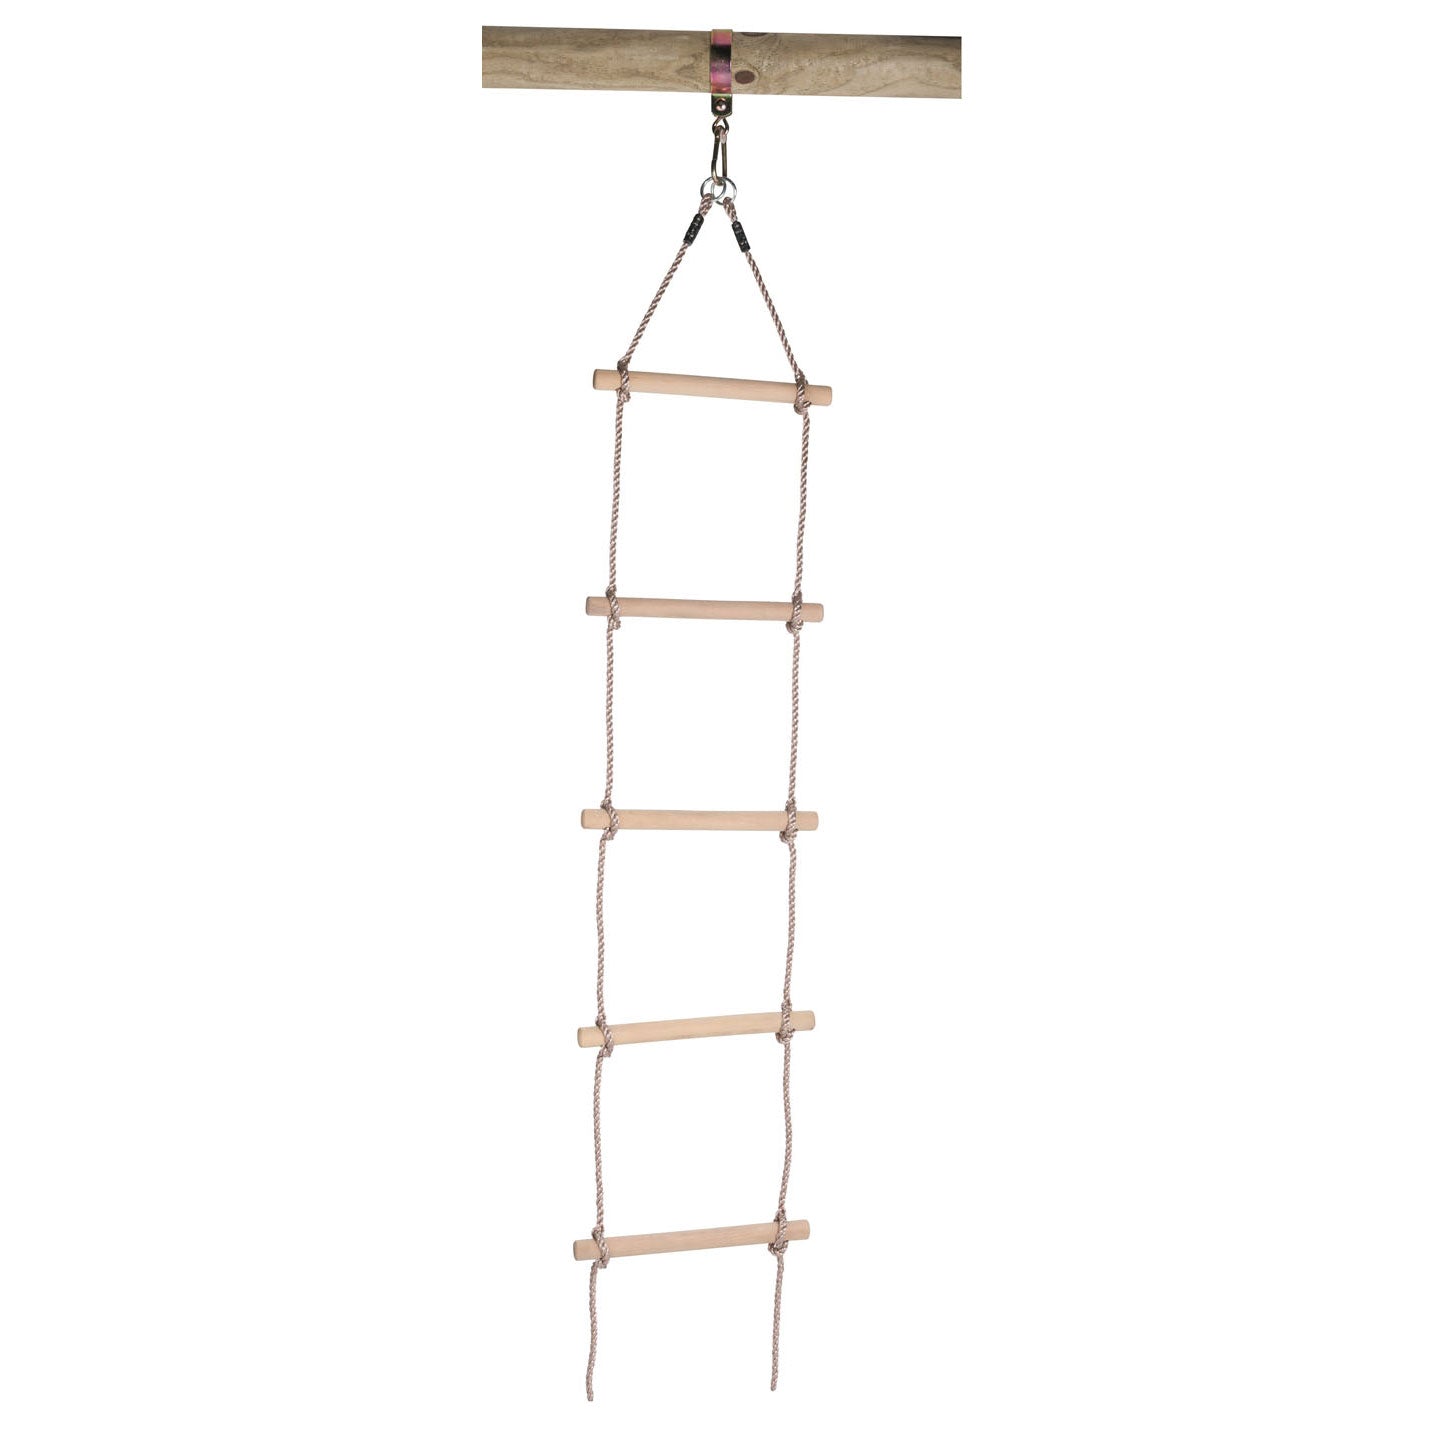 Swingking Swingking Corder con escalones de madera, 190 cm